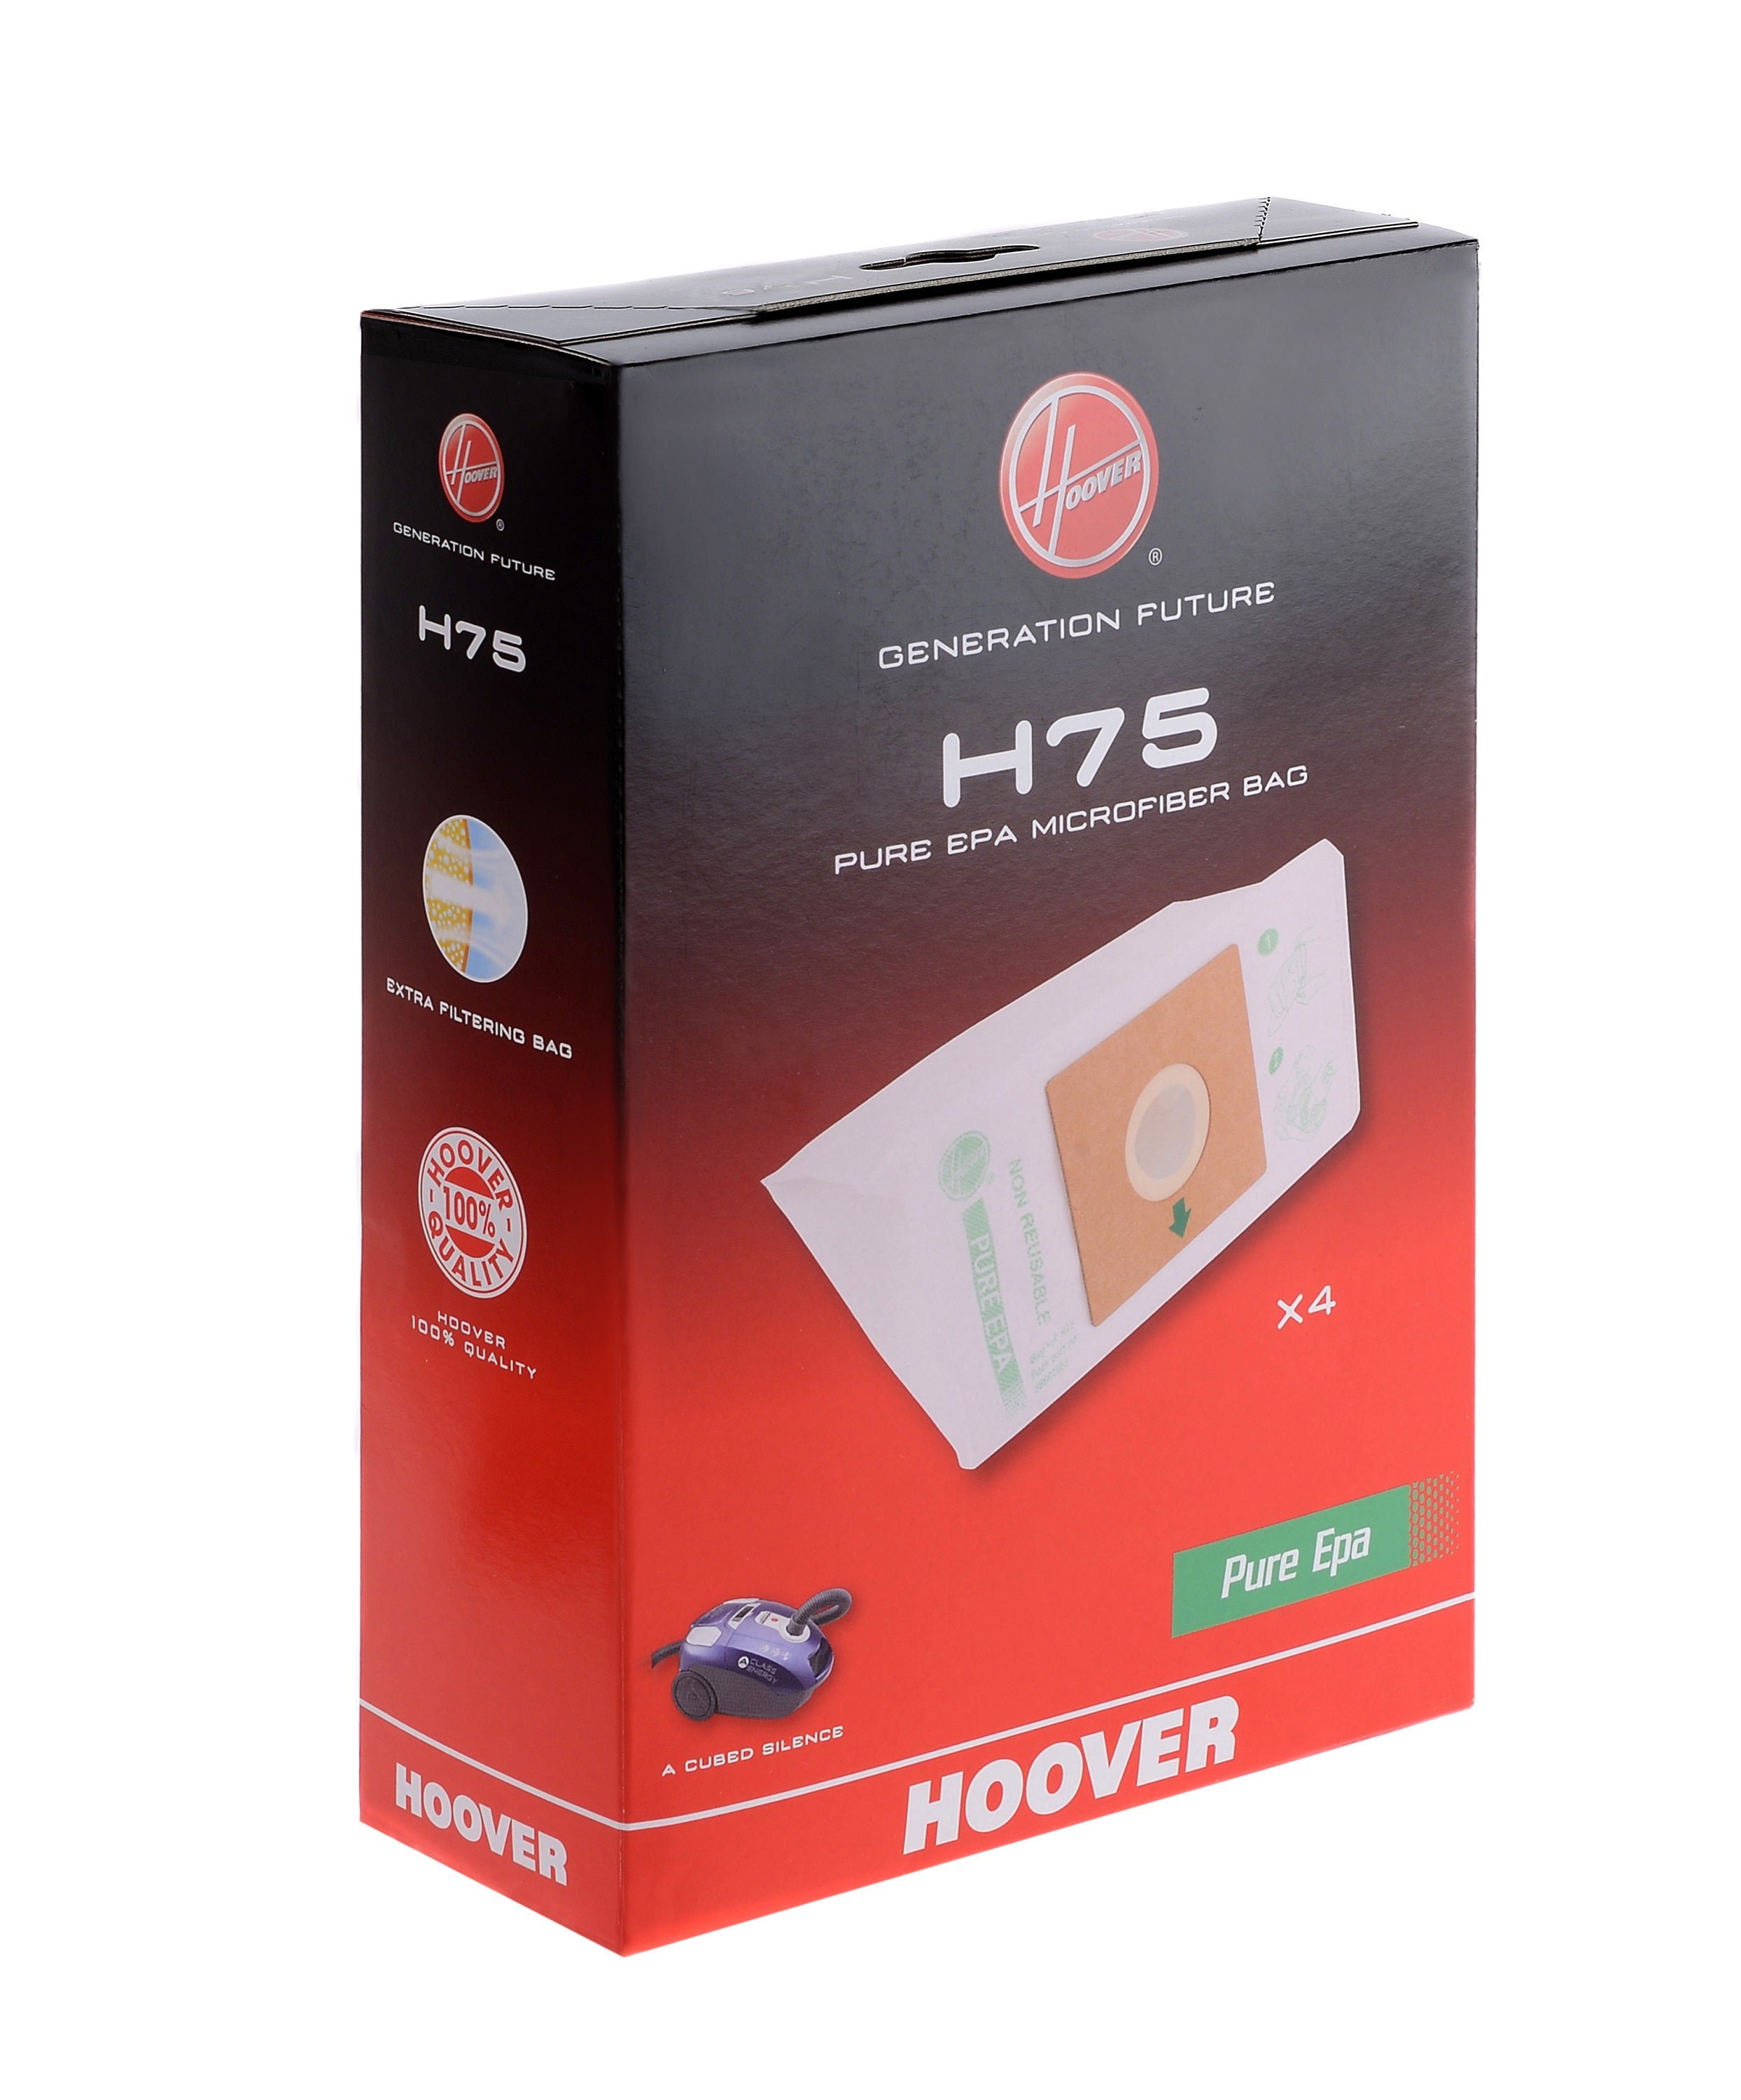 Sacs H75 pour aspirateurs traineaux en microfibres, pure EPA – Hoover France